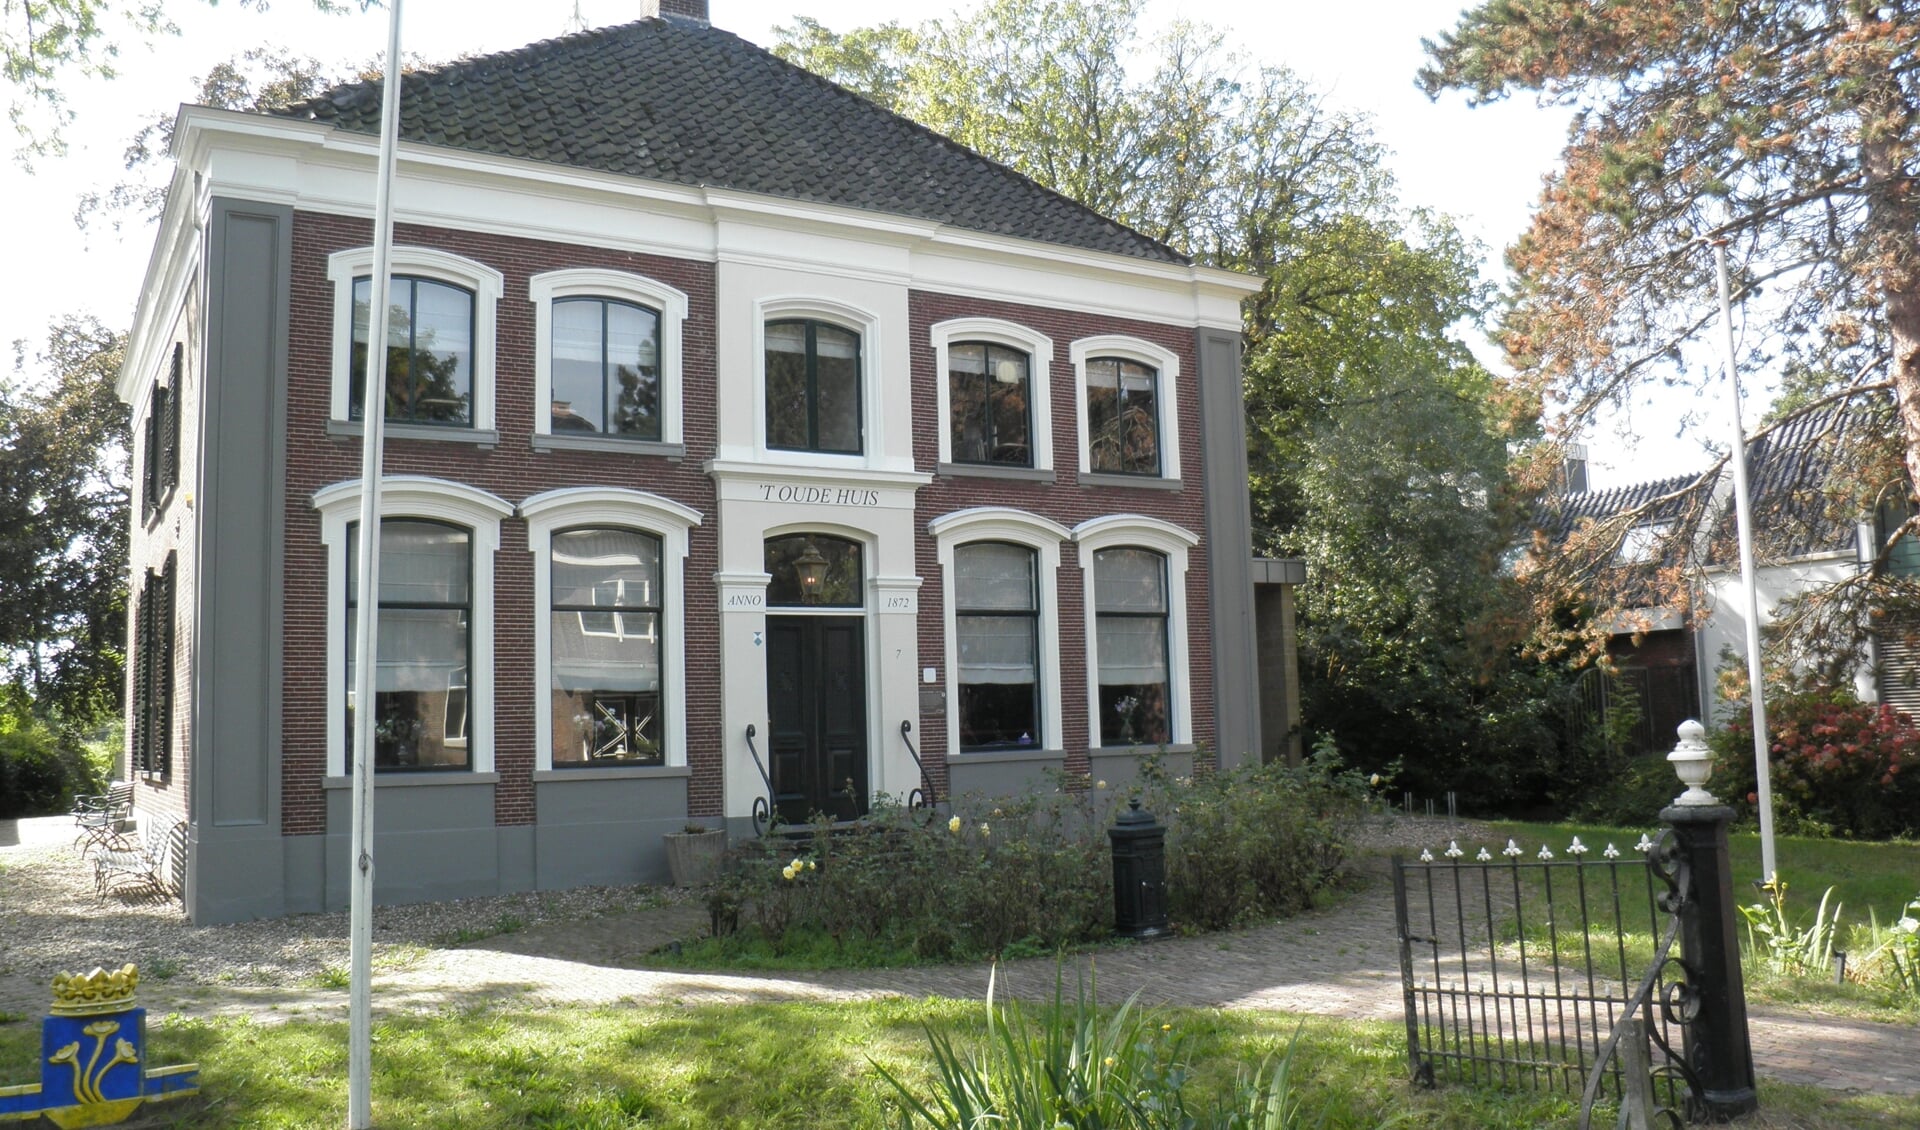 't Oude Huis aan de Dorpsstraat 7 in Zoetermeer. Foto Kees van rongen